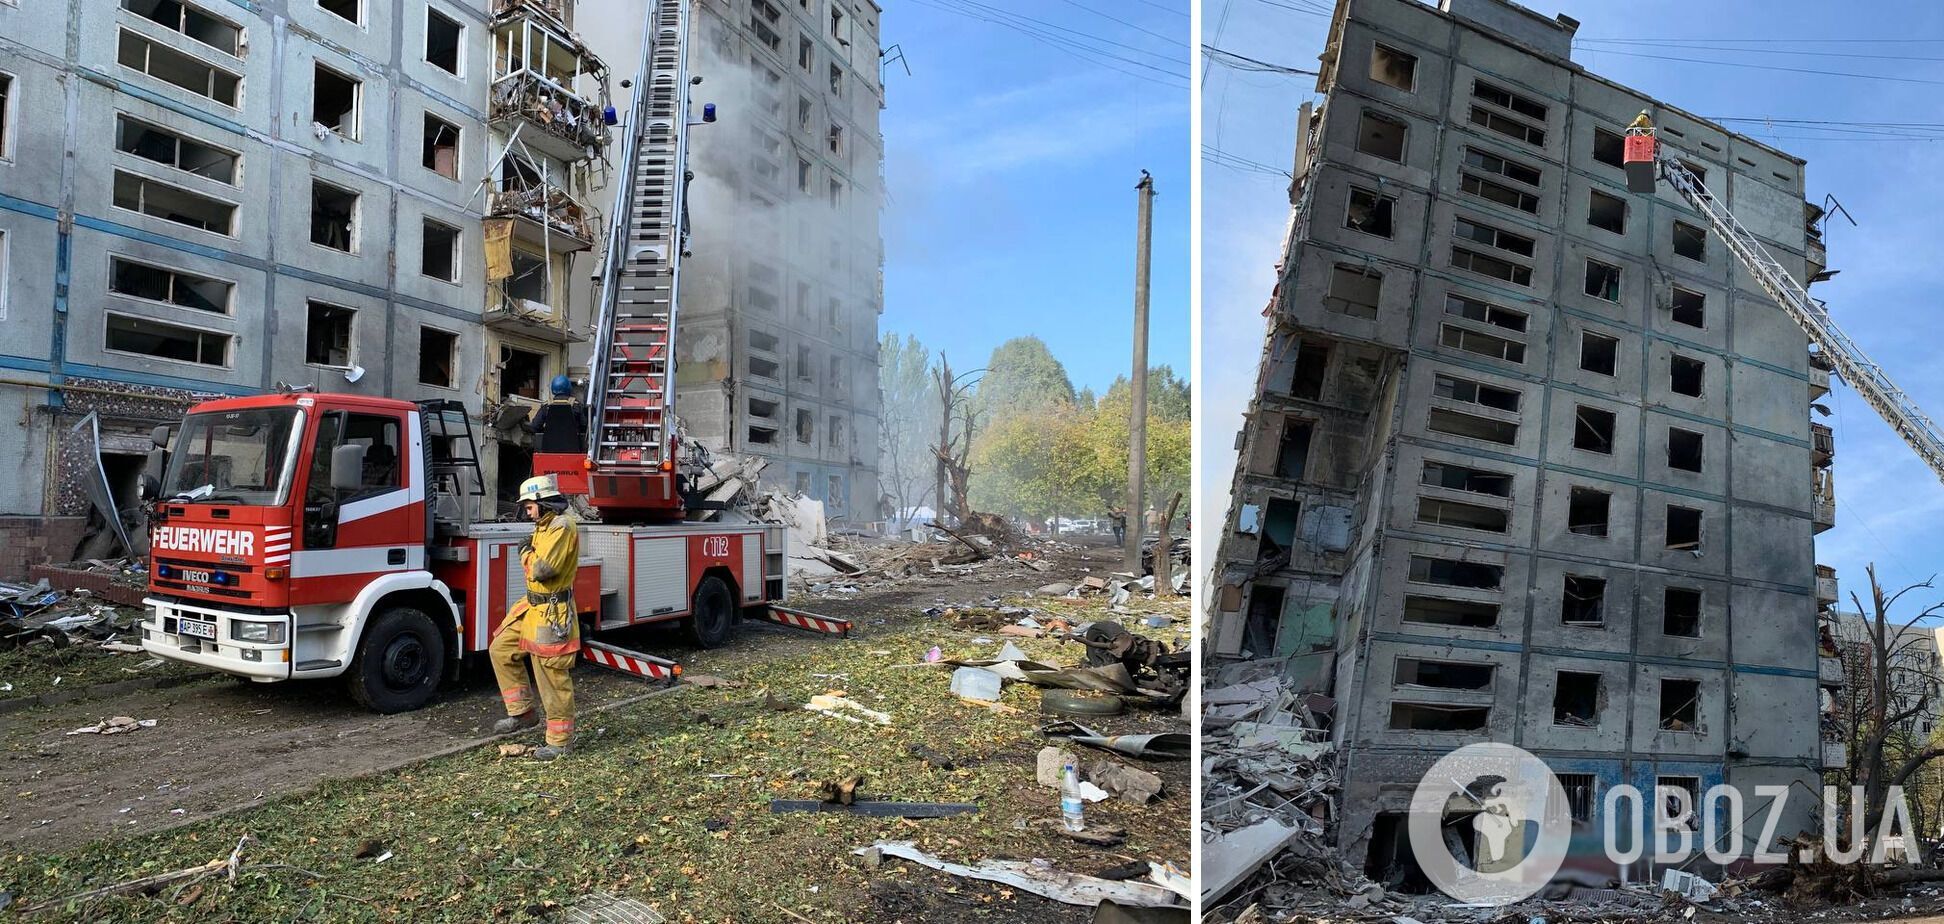 РФ ударила ракетами по жилым домам в Запорожье: 14 жертв, почти 90 раненых